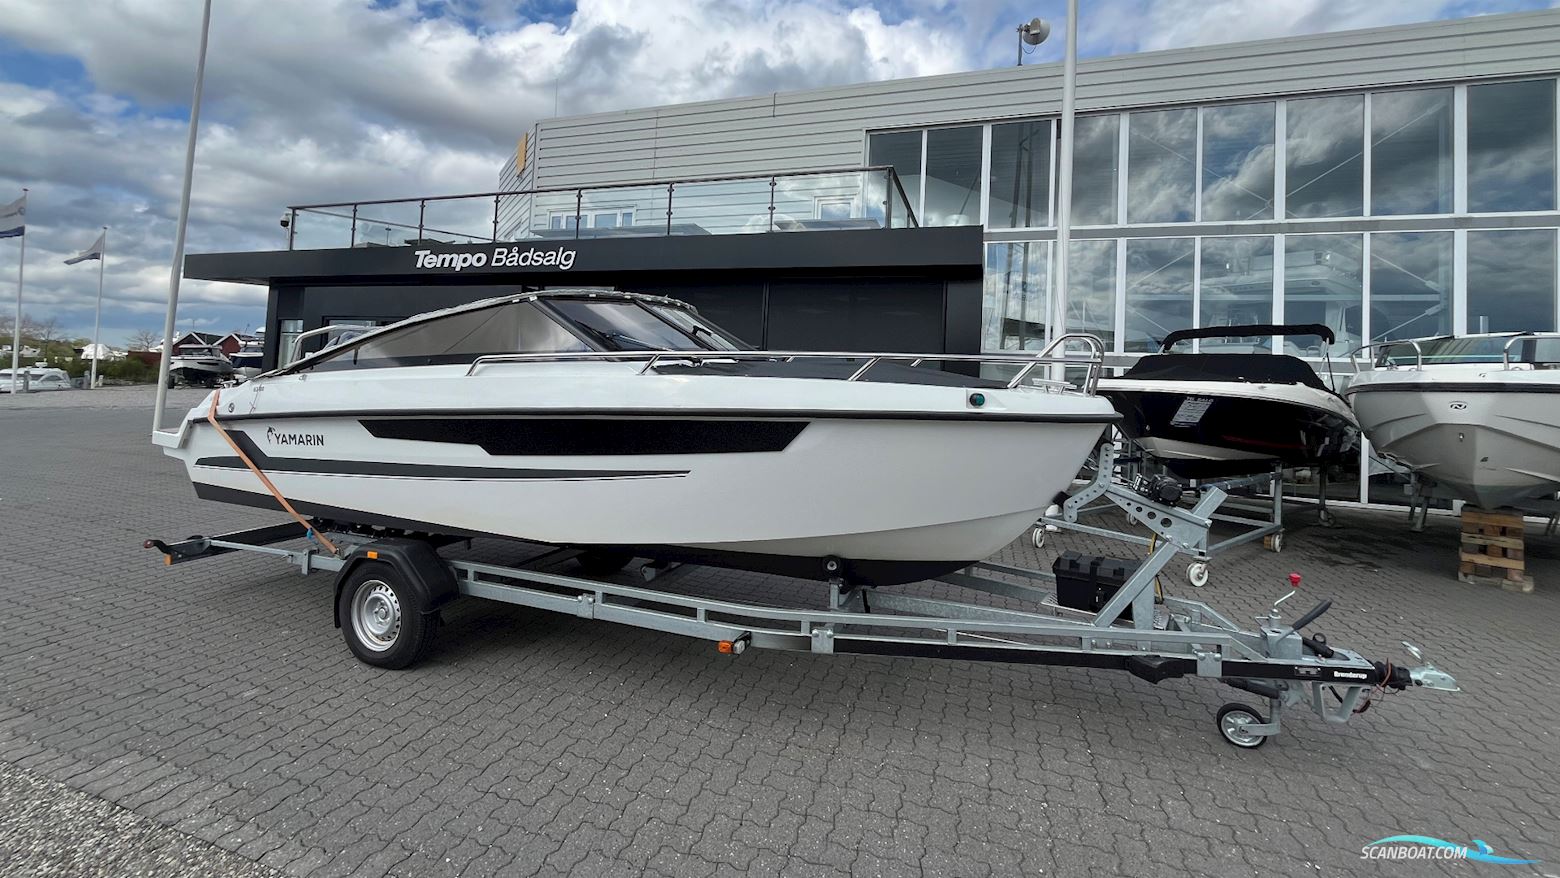 Yamarin 63 Bov Ridder Motor boat 2021, with Yamaha engine, Denmark